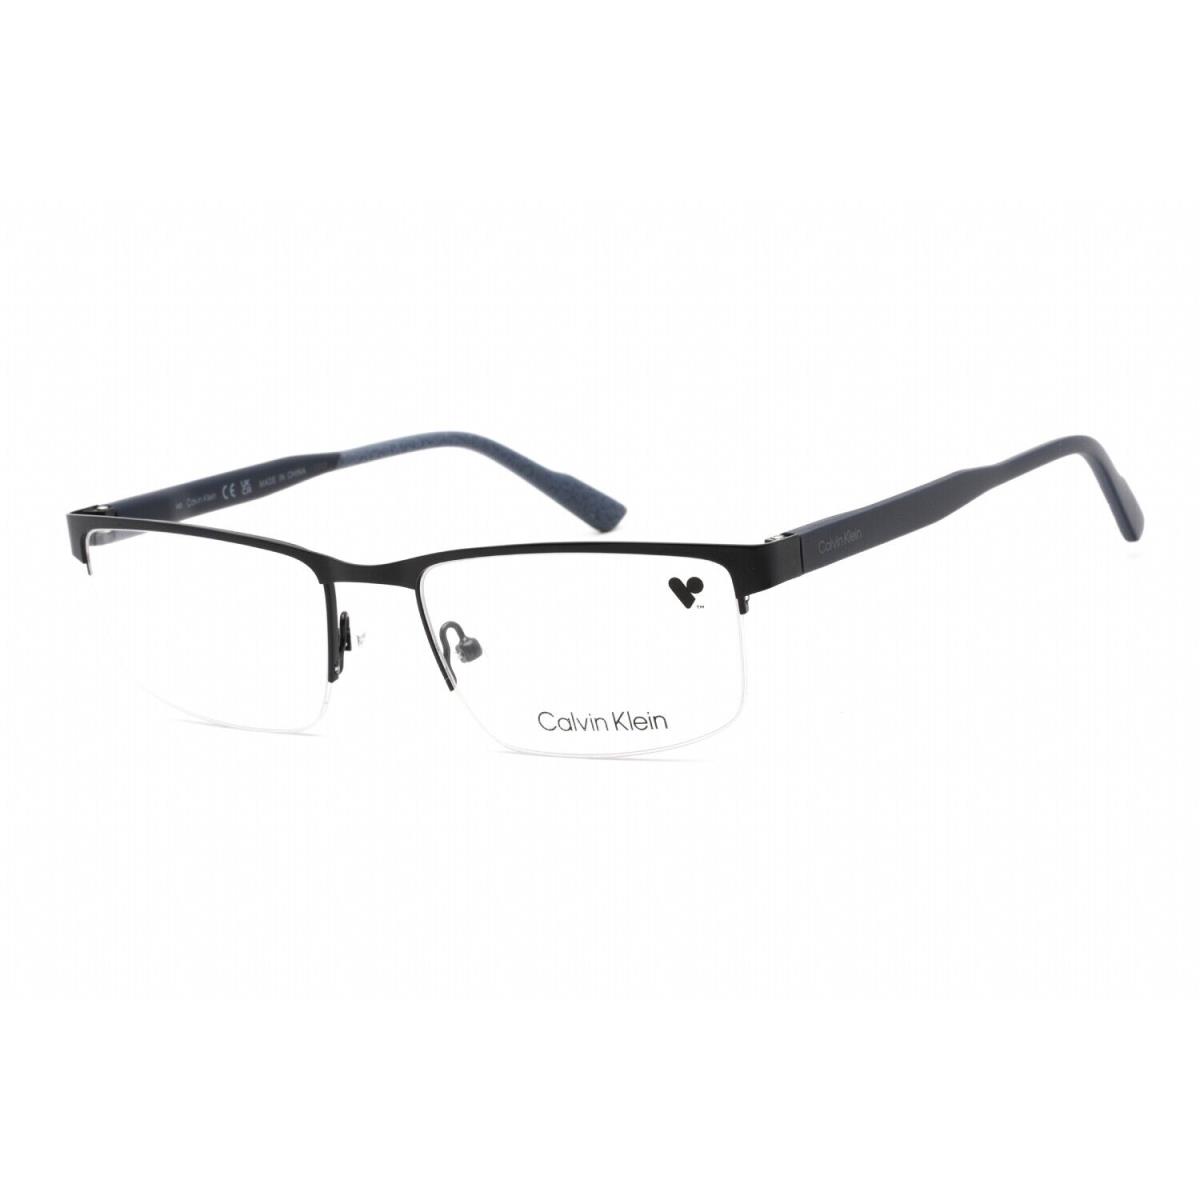 Calvin Klein CK 21126 438 Eyeglasses Blue Frame 55mm